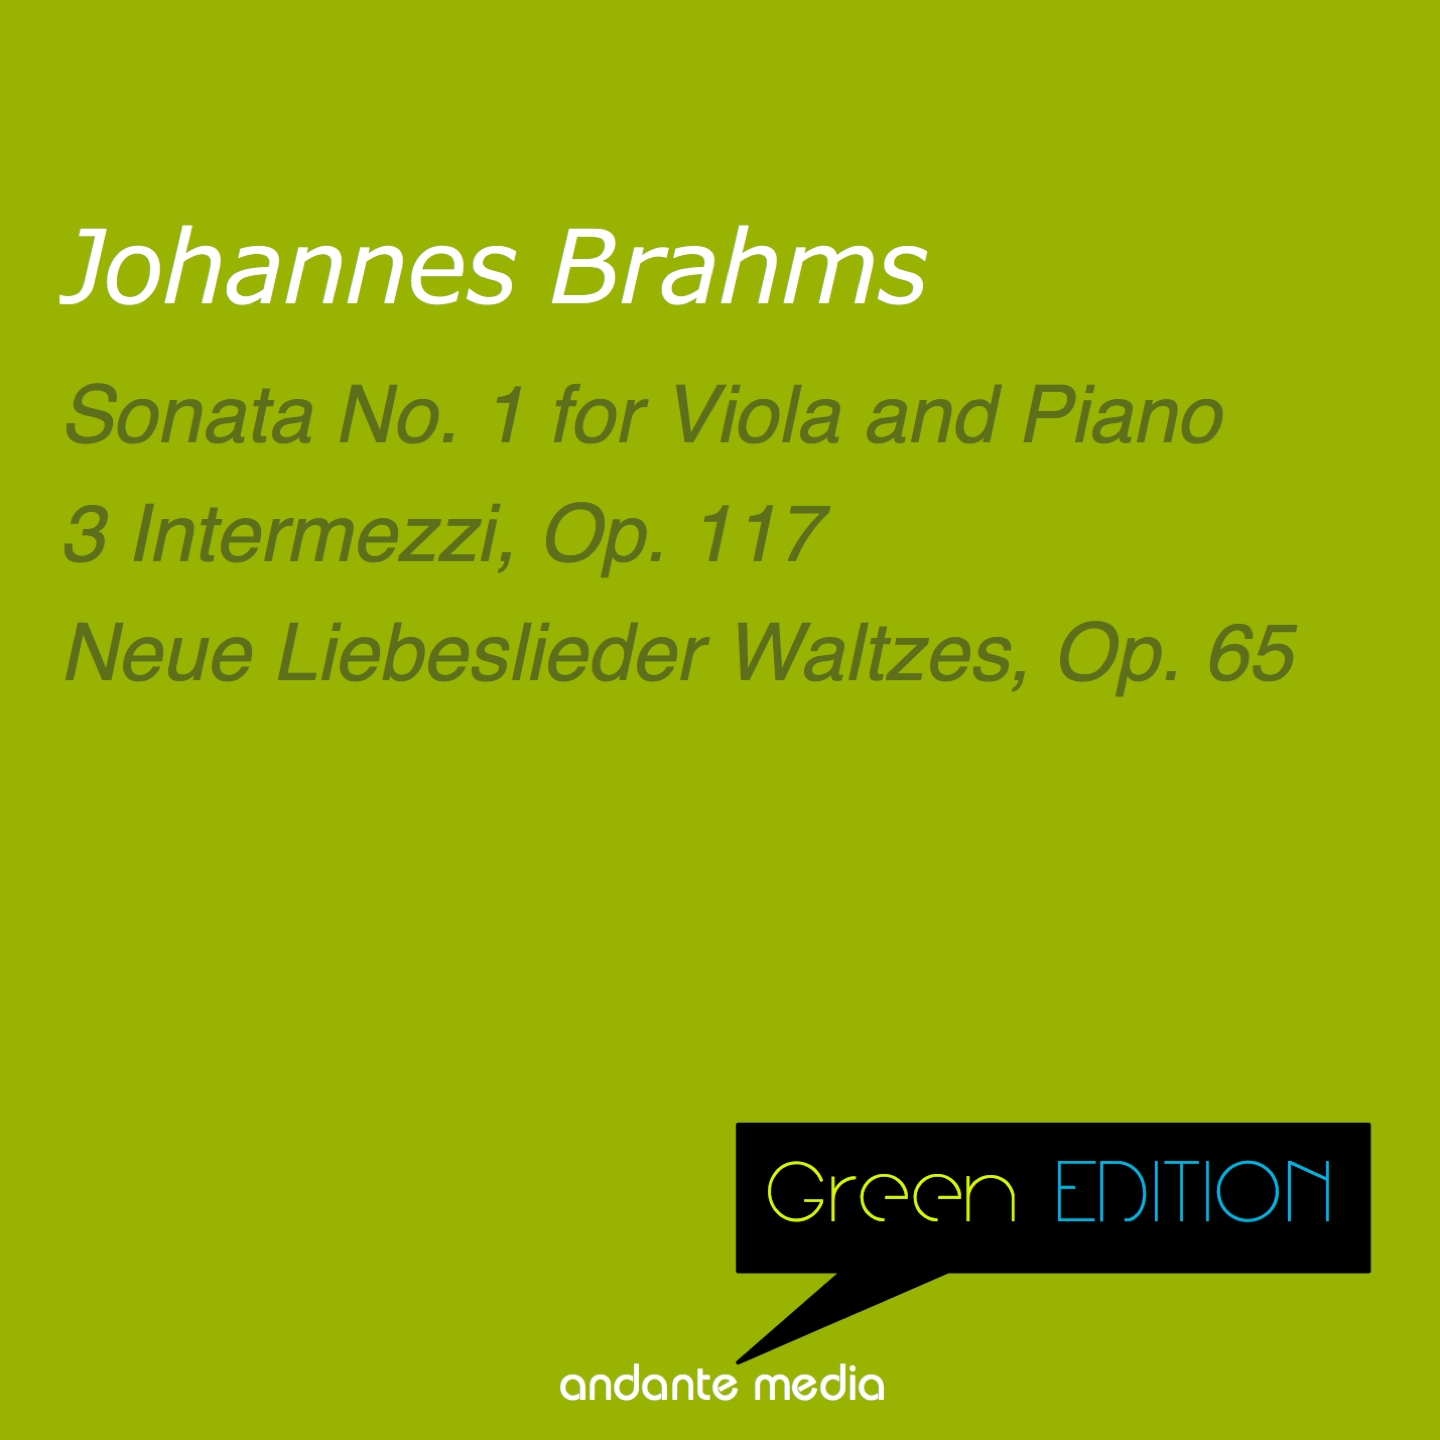 Green Edition - Brahms: Sonata No. 1 & Neue Liebeslieder Waltzes, Op. 65